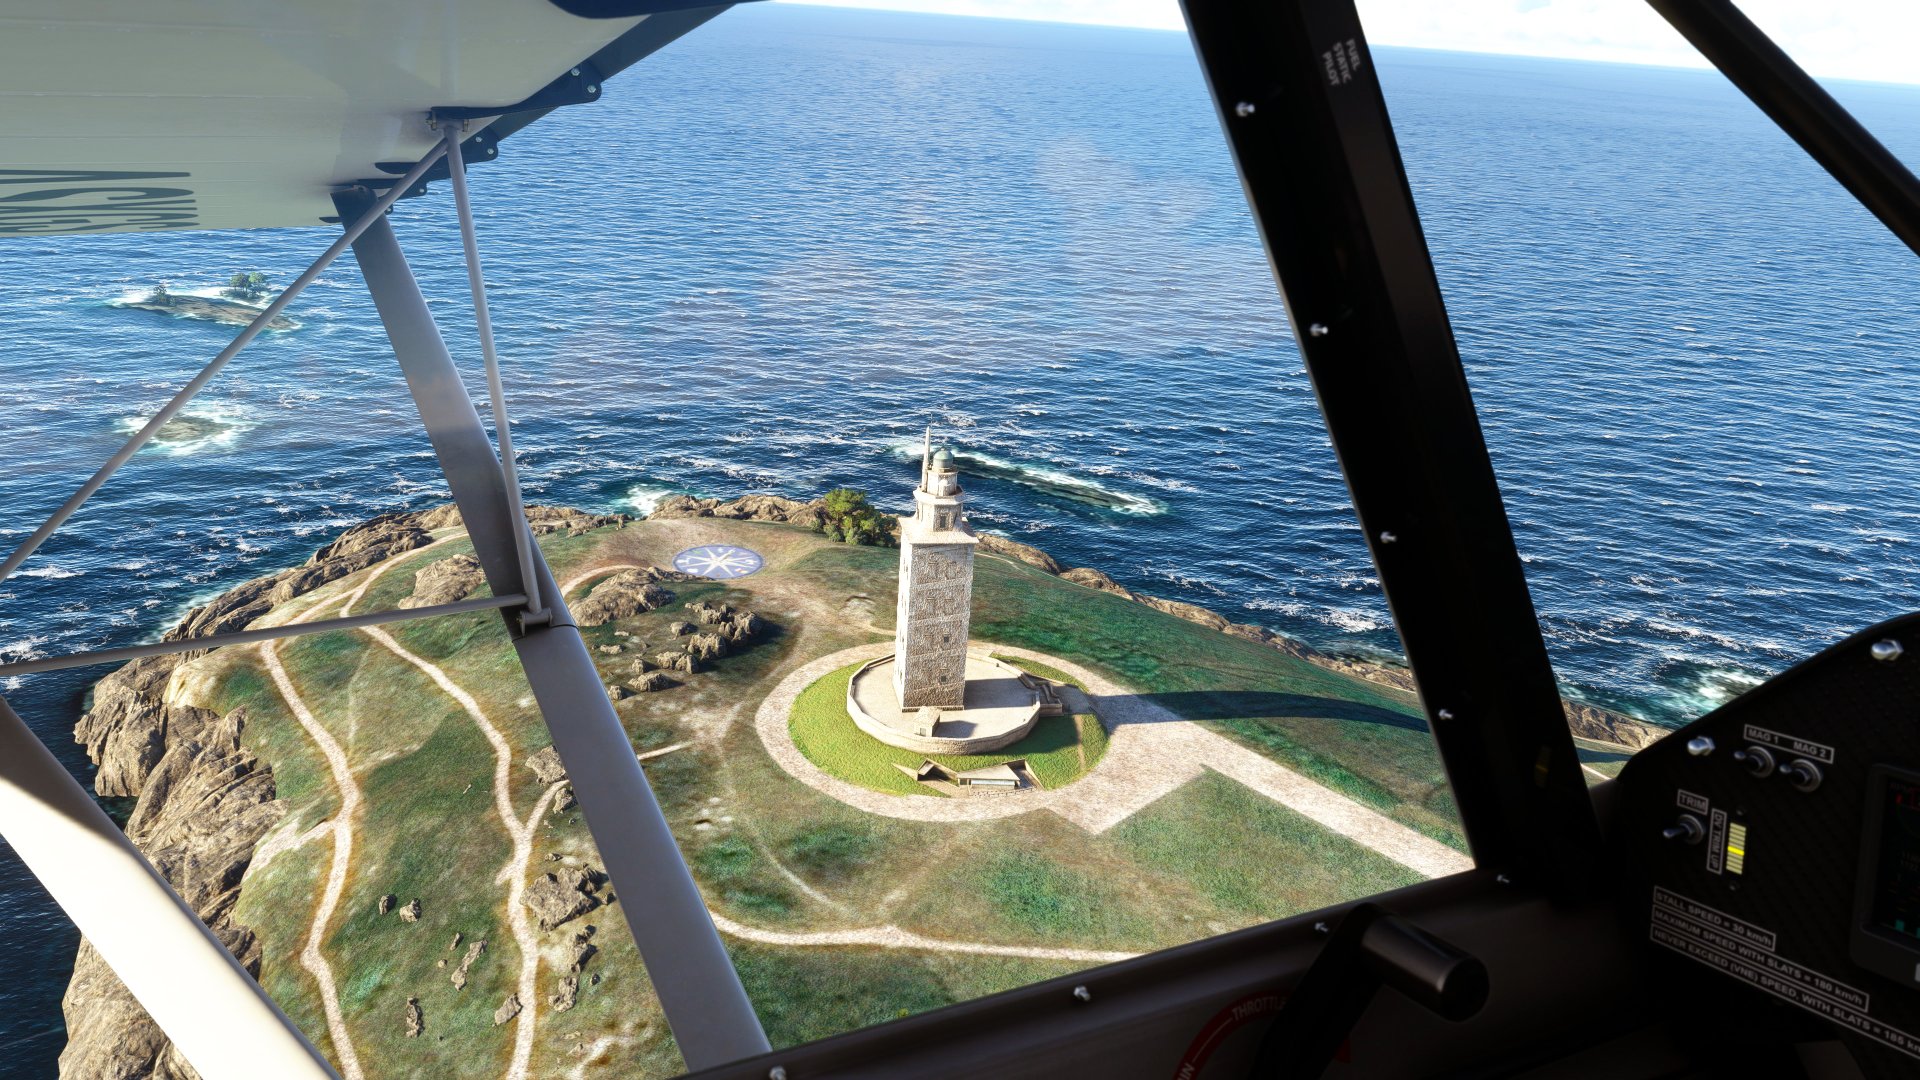 Disponible la nueva actualización gratuita de Microsoft Flight Simulator especial España y Portugal - Microsoft Flight Simulator se actualiza con la World Update VIII, centrada en la península ibérica.